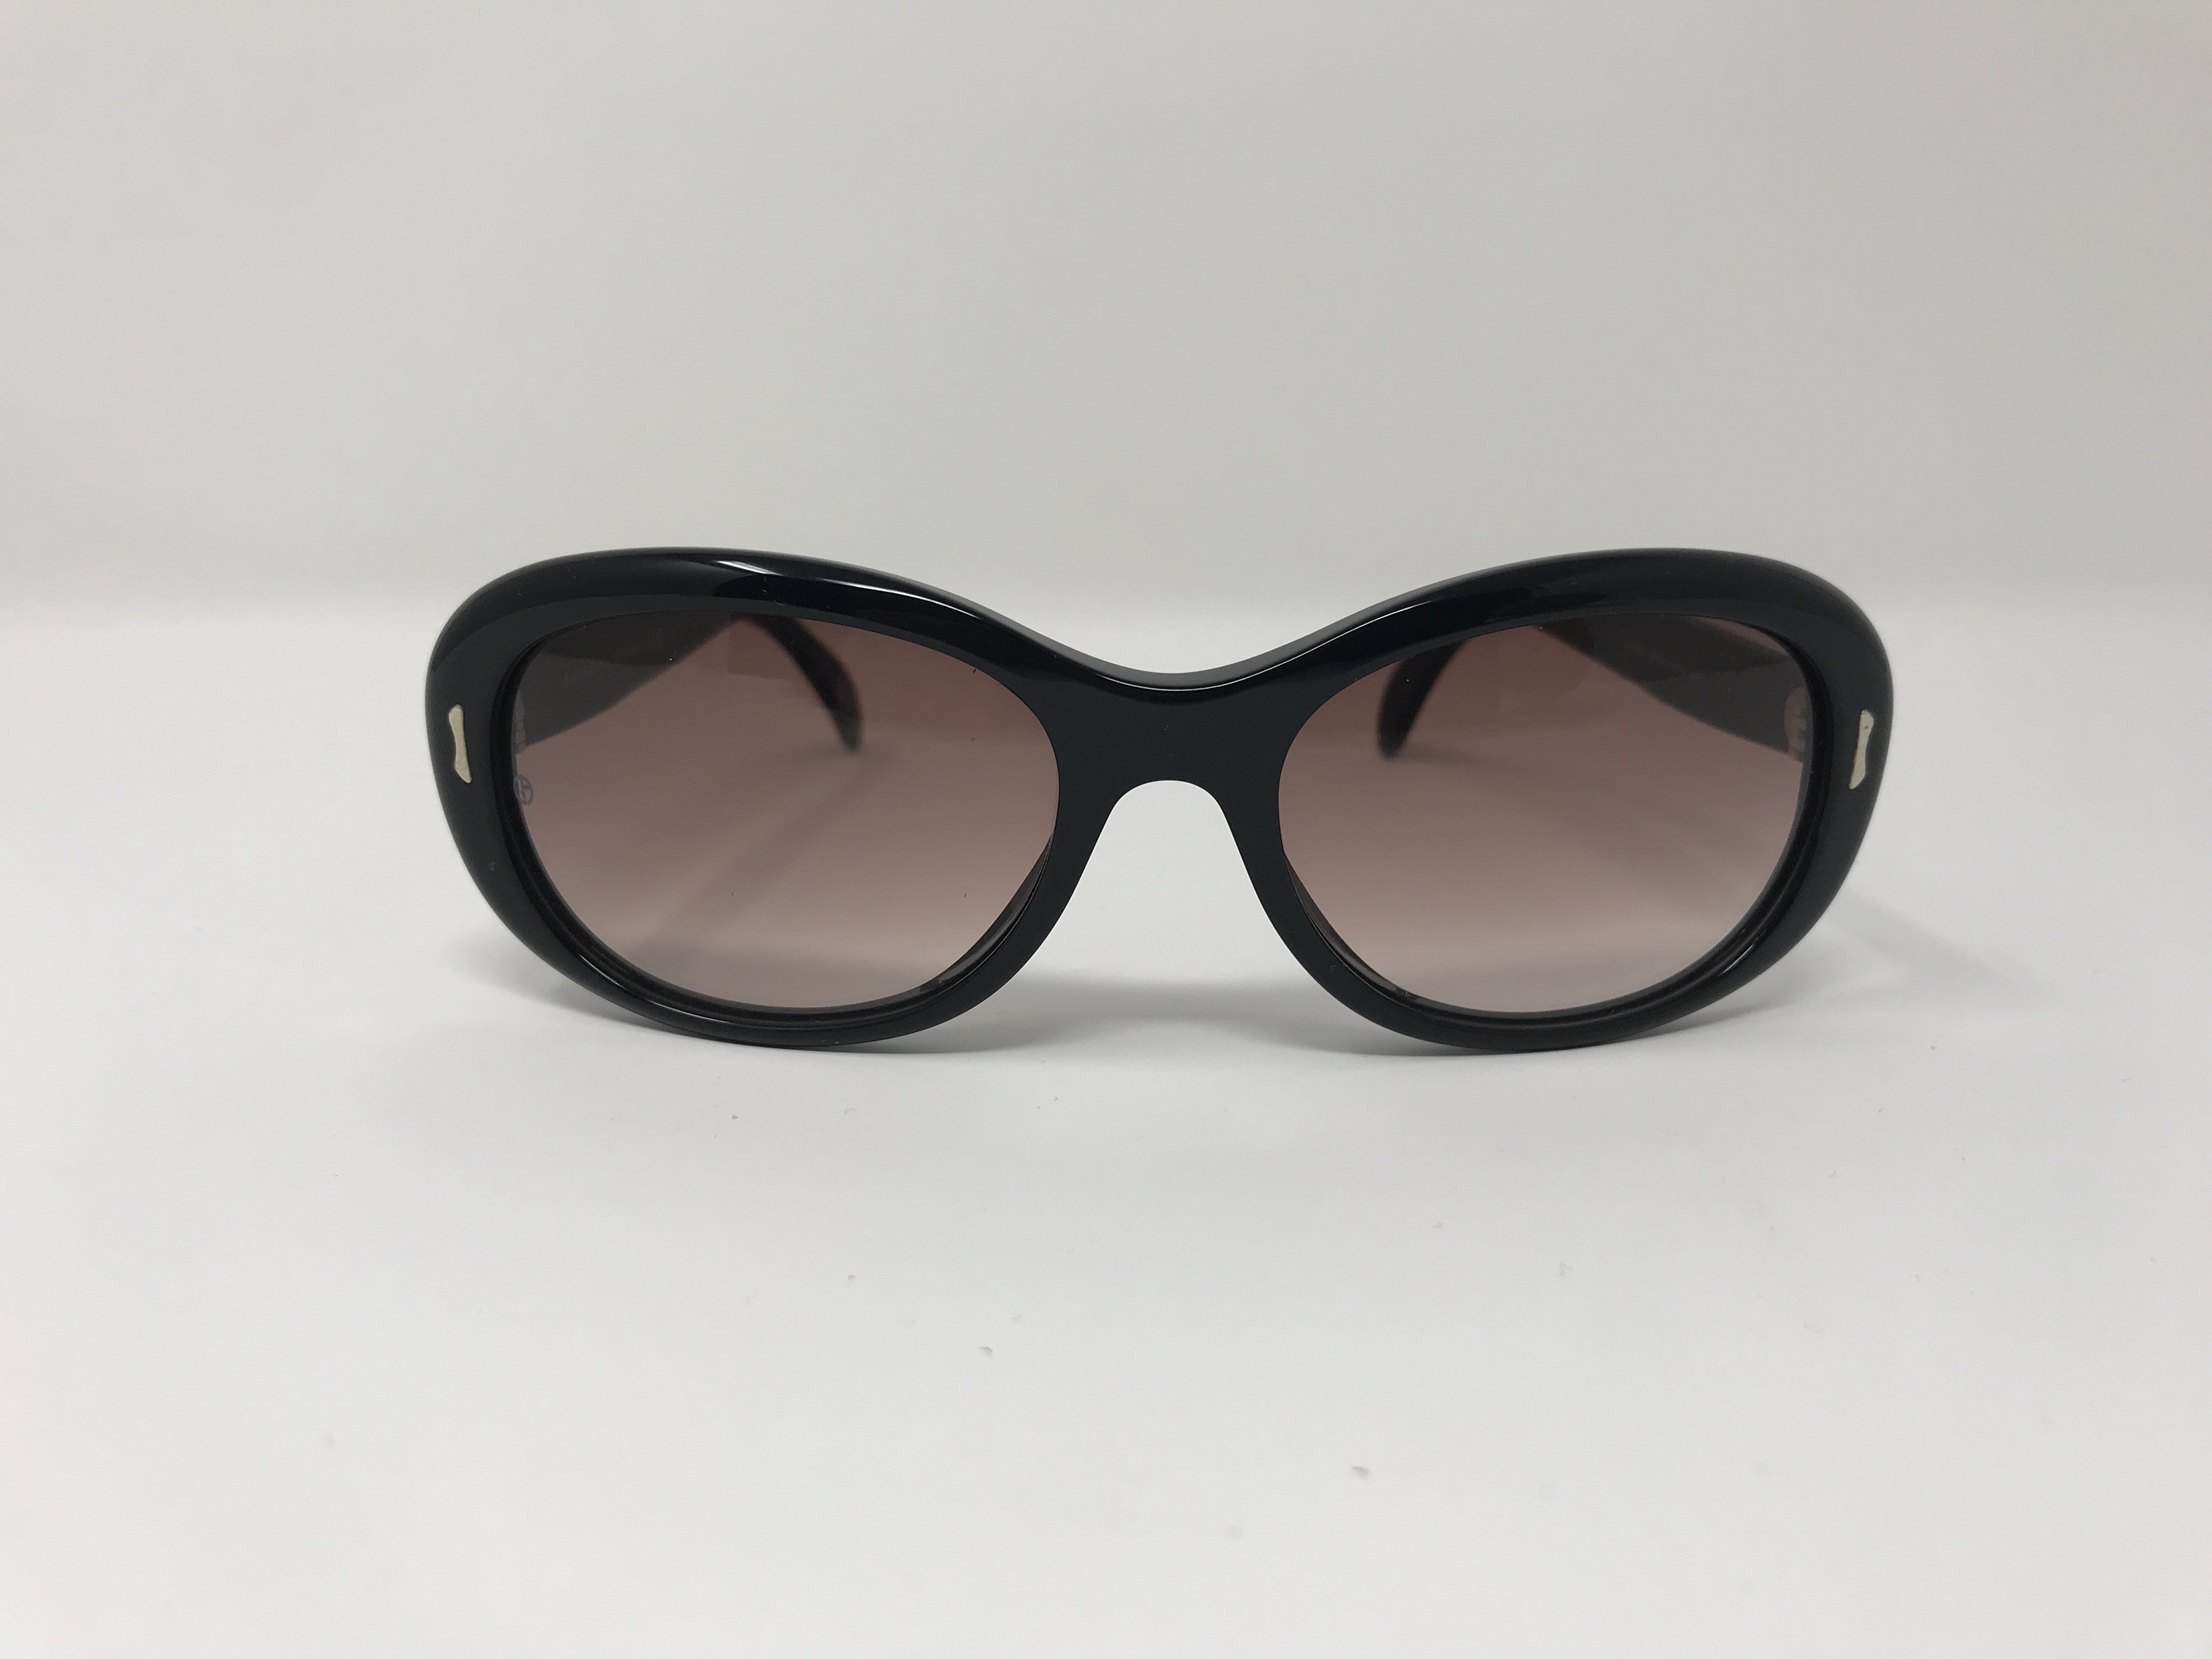 Giorgio Armani ga780/s Women's Sunglasses